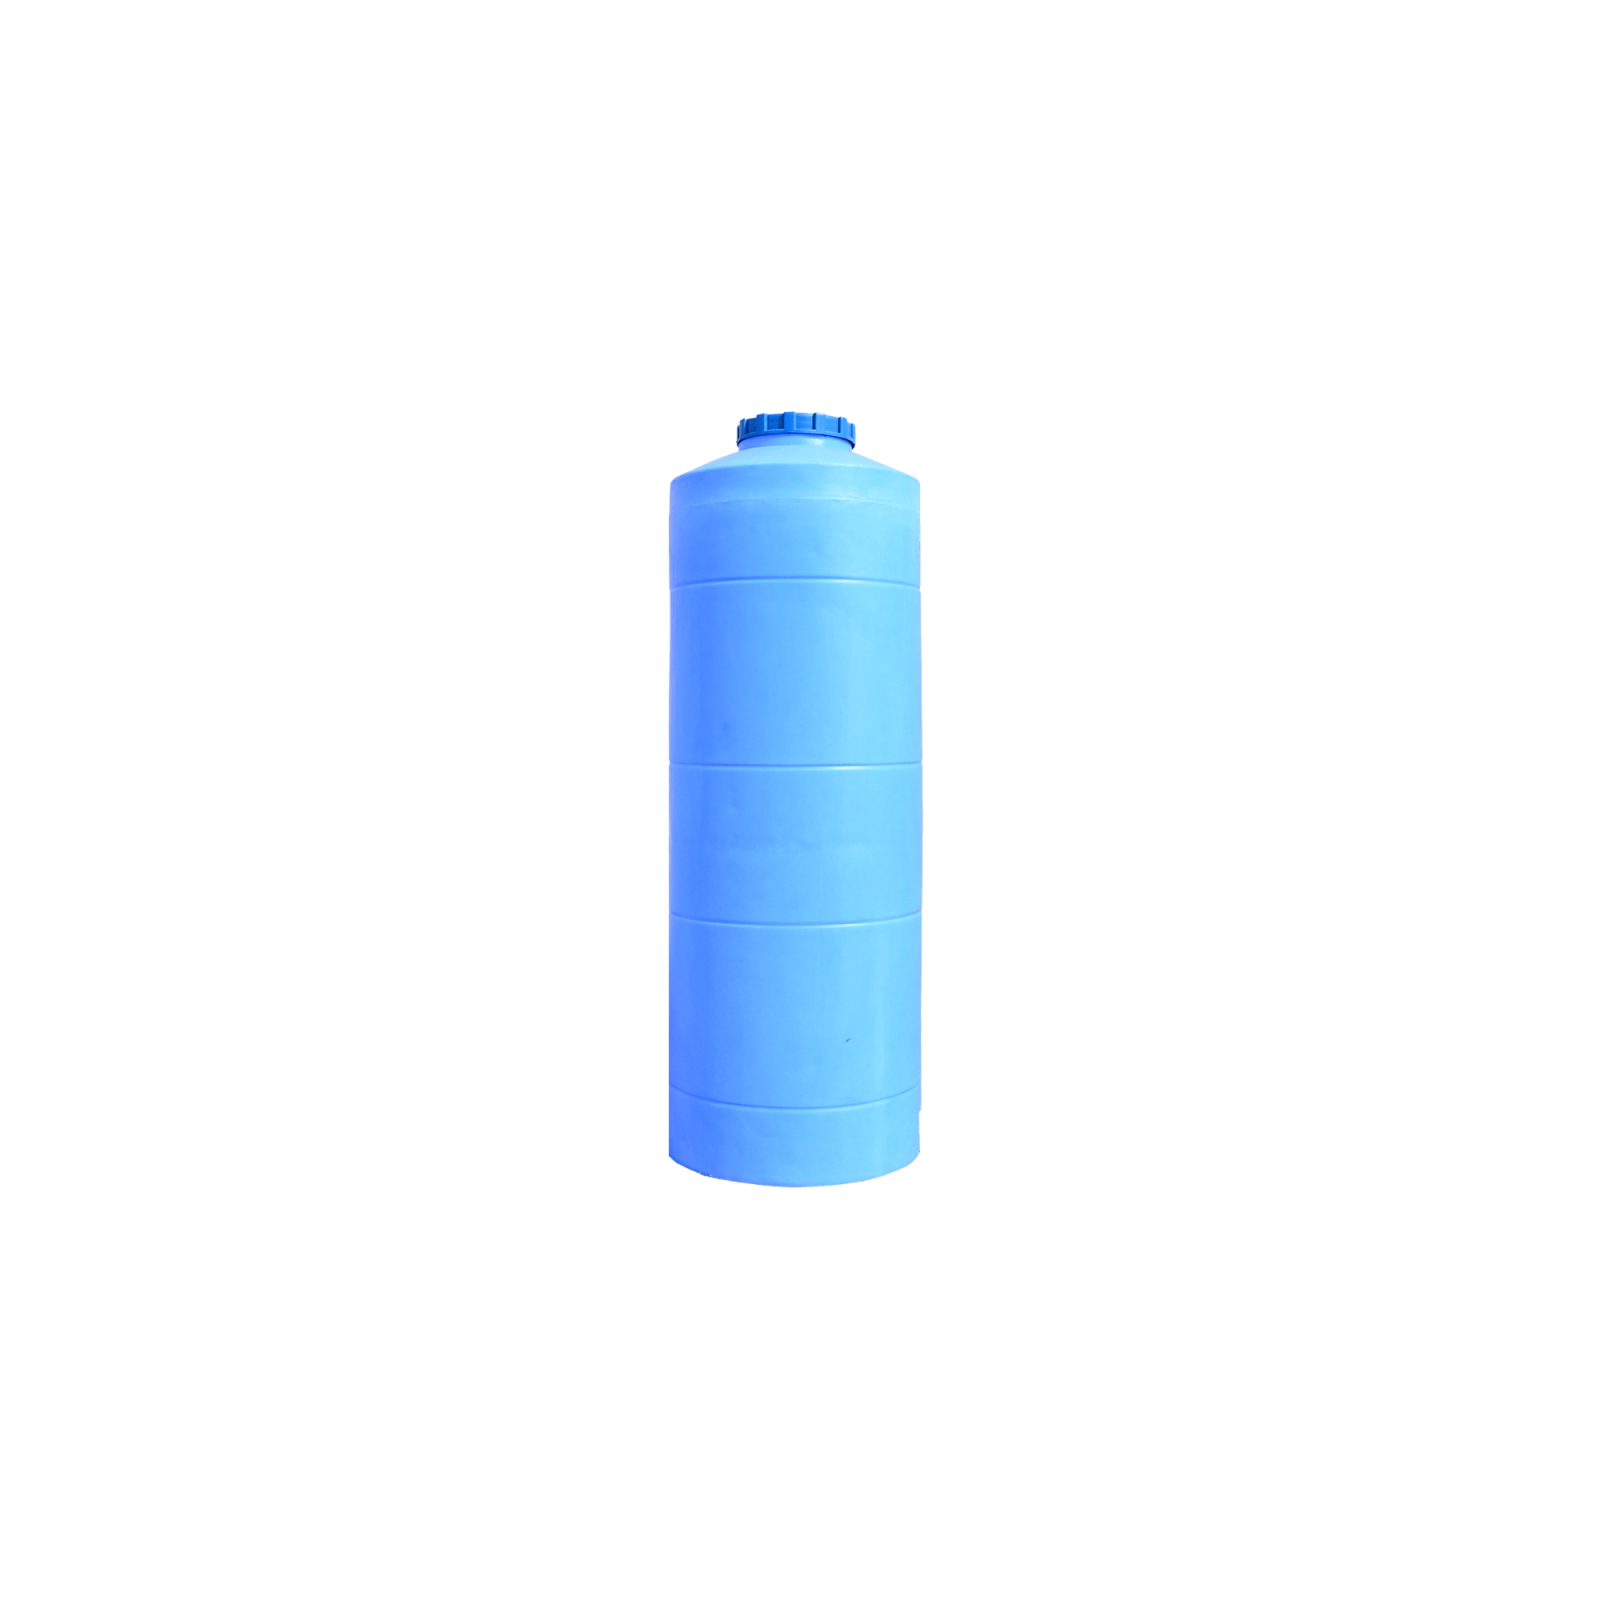 Емкость для воды Пласт Бак вертикальная пищевая 300 л узкая синяя (12431)